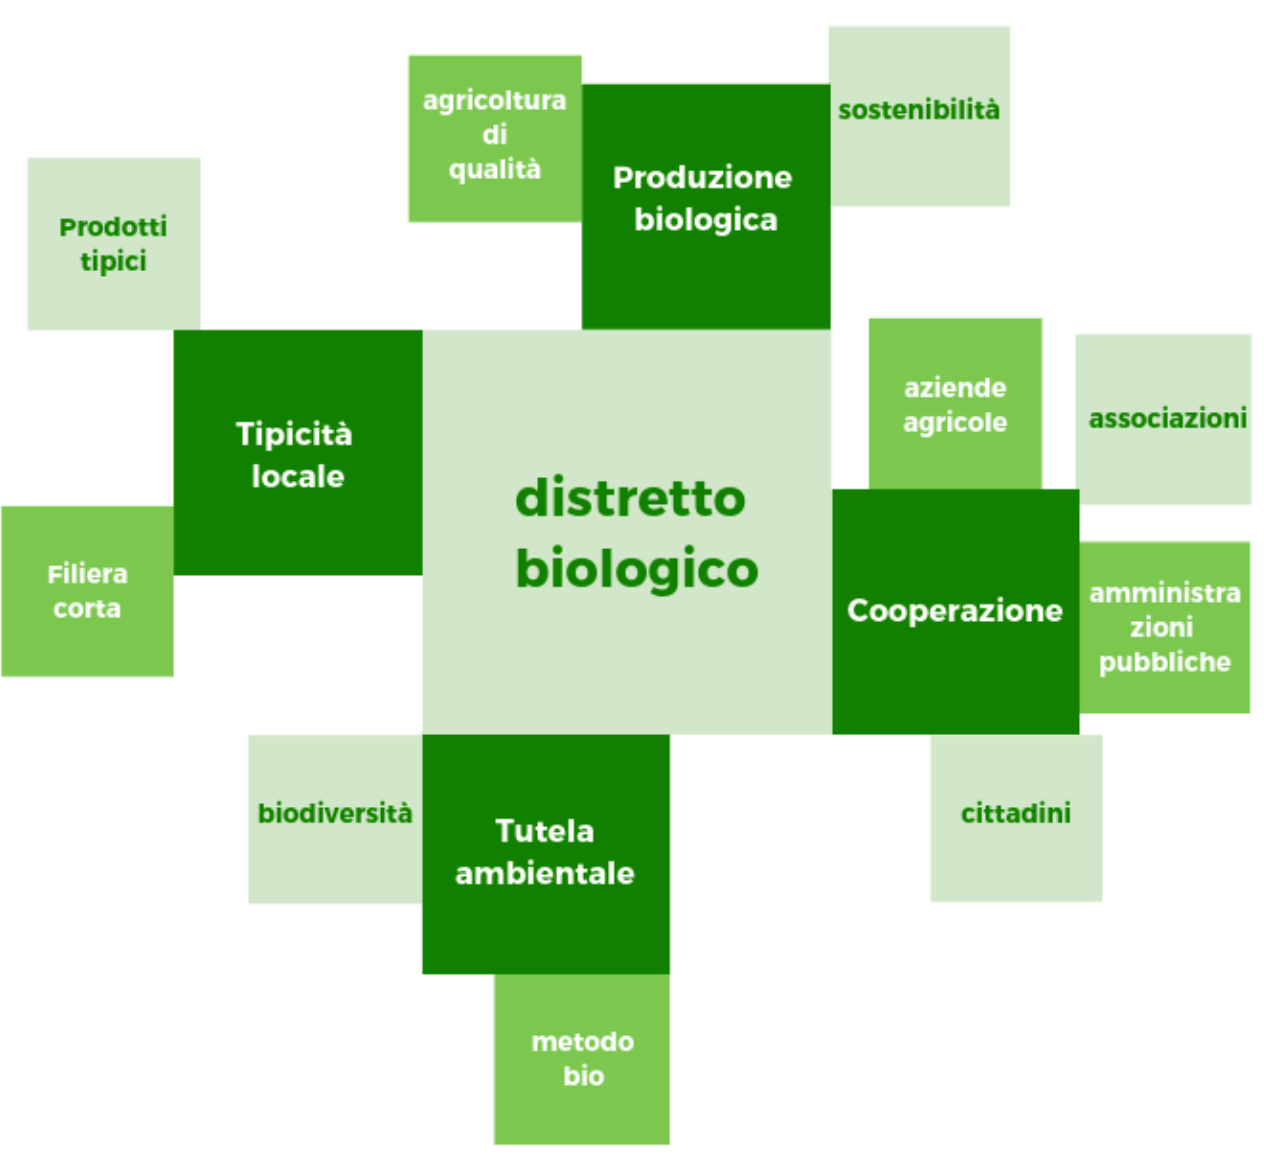 Biodistretto